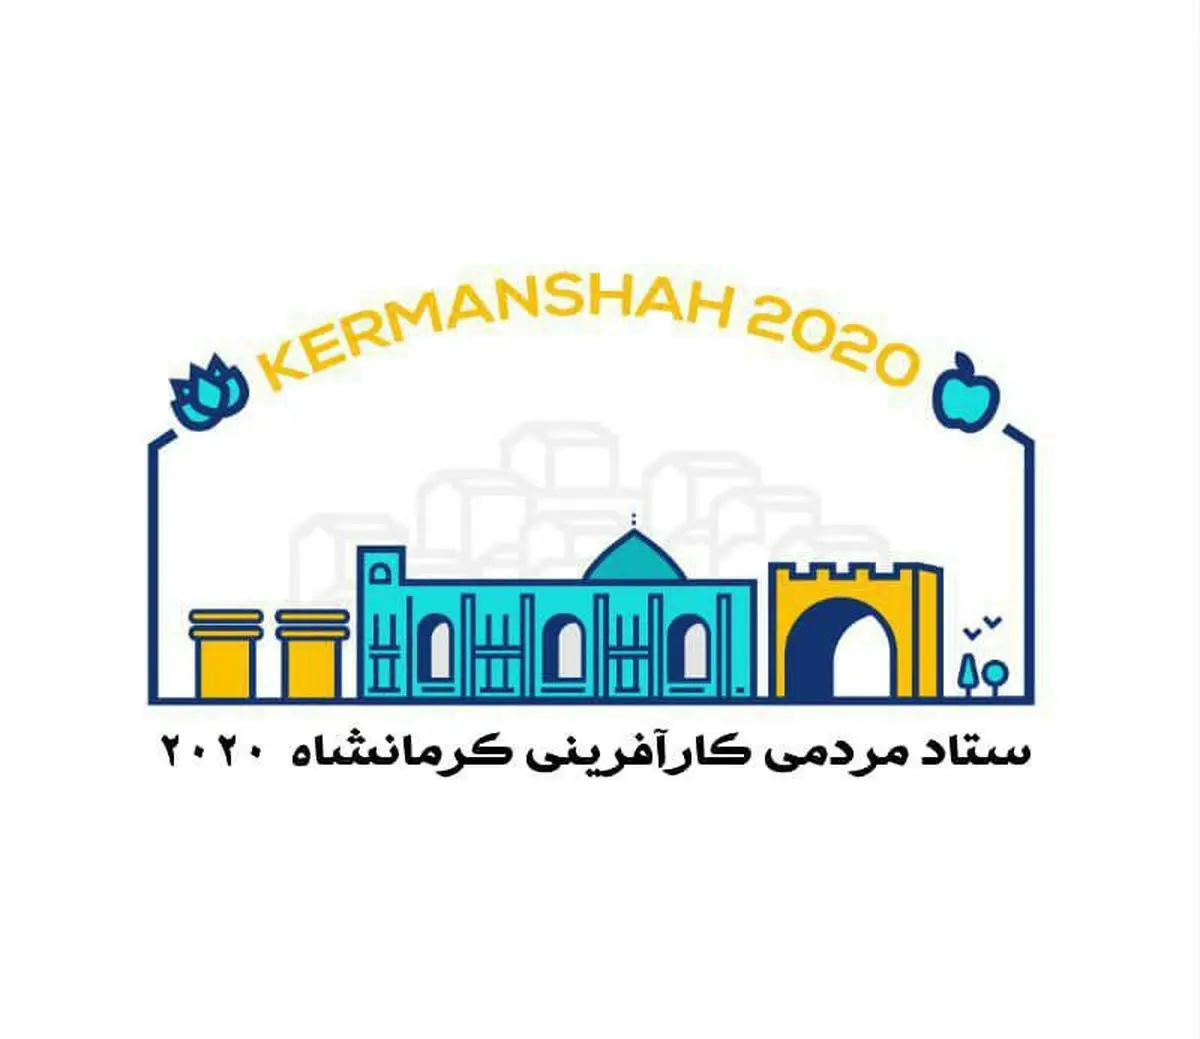 رونمایی از  لوگوی ستاد مردمی کرمانشاه2020  